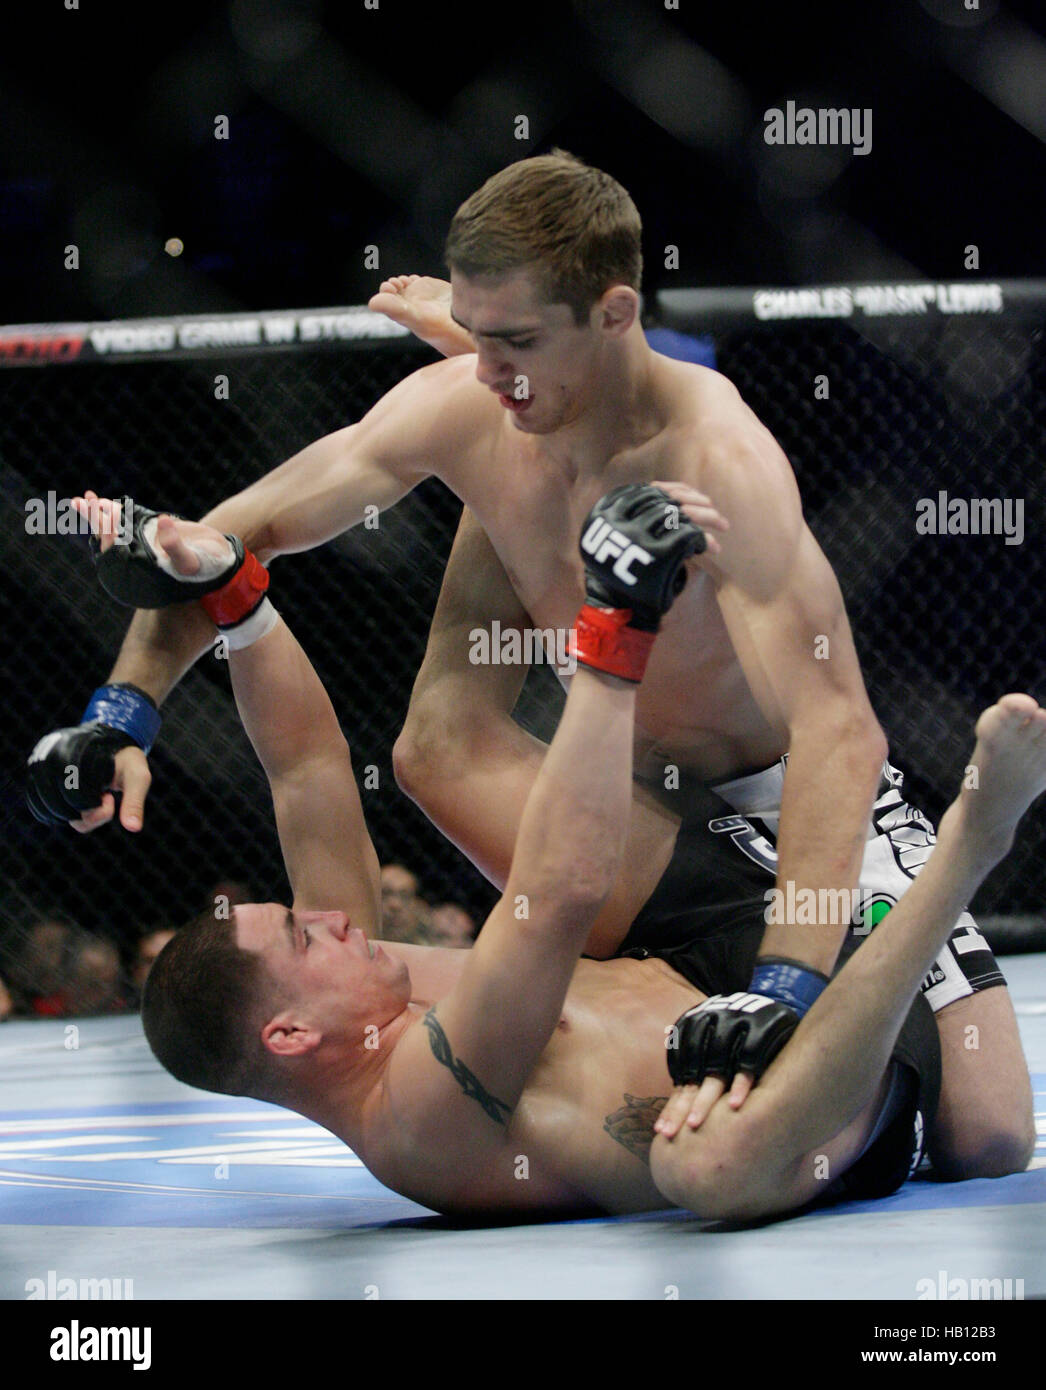 UFC fighter John Hathaway, haut, combat Diego Sanchez lors de l'UFC 114 le 29 mai 2010 à Las Vegas, Nevada. Photo par Francis Specker Banque D'Images